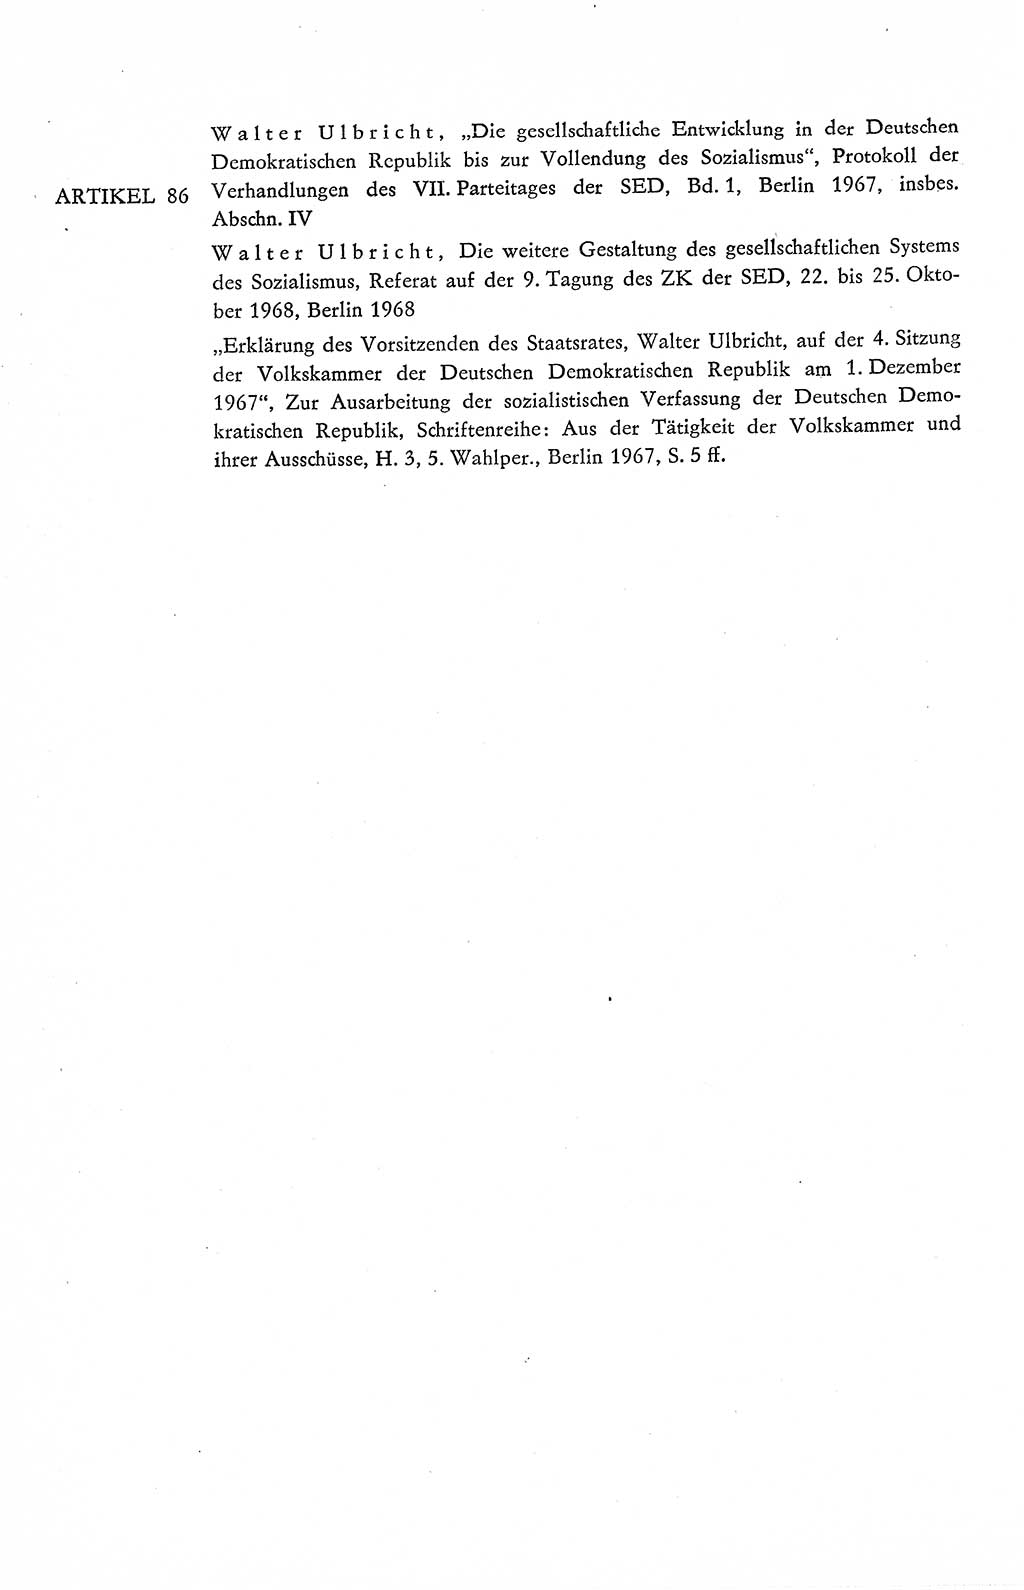 Verfassung der Deutschen Demokratischen Republik (DDR), Dokumente, Kommentar 1969, Band 2, Seite 408 (Verf. DDR Dok. Komm. 1969, Bd. 2, S. 408)